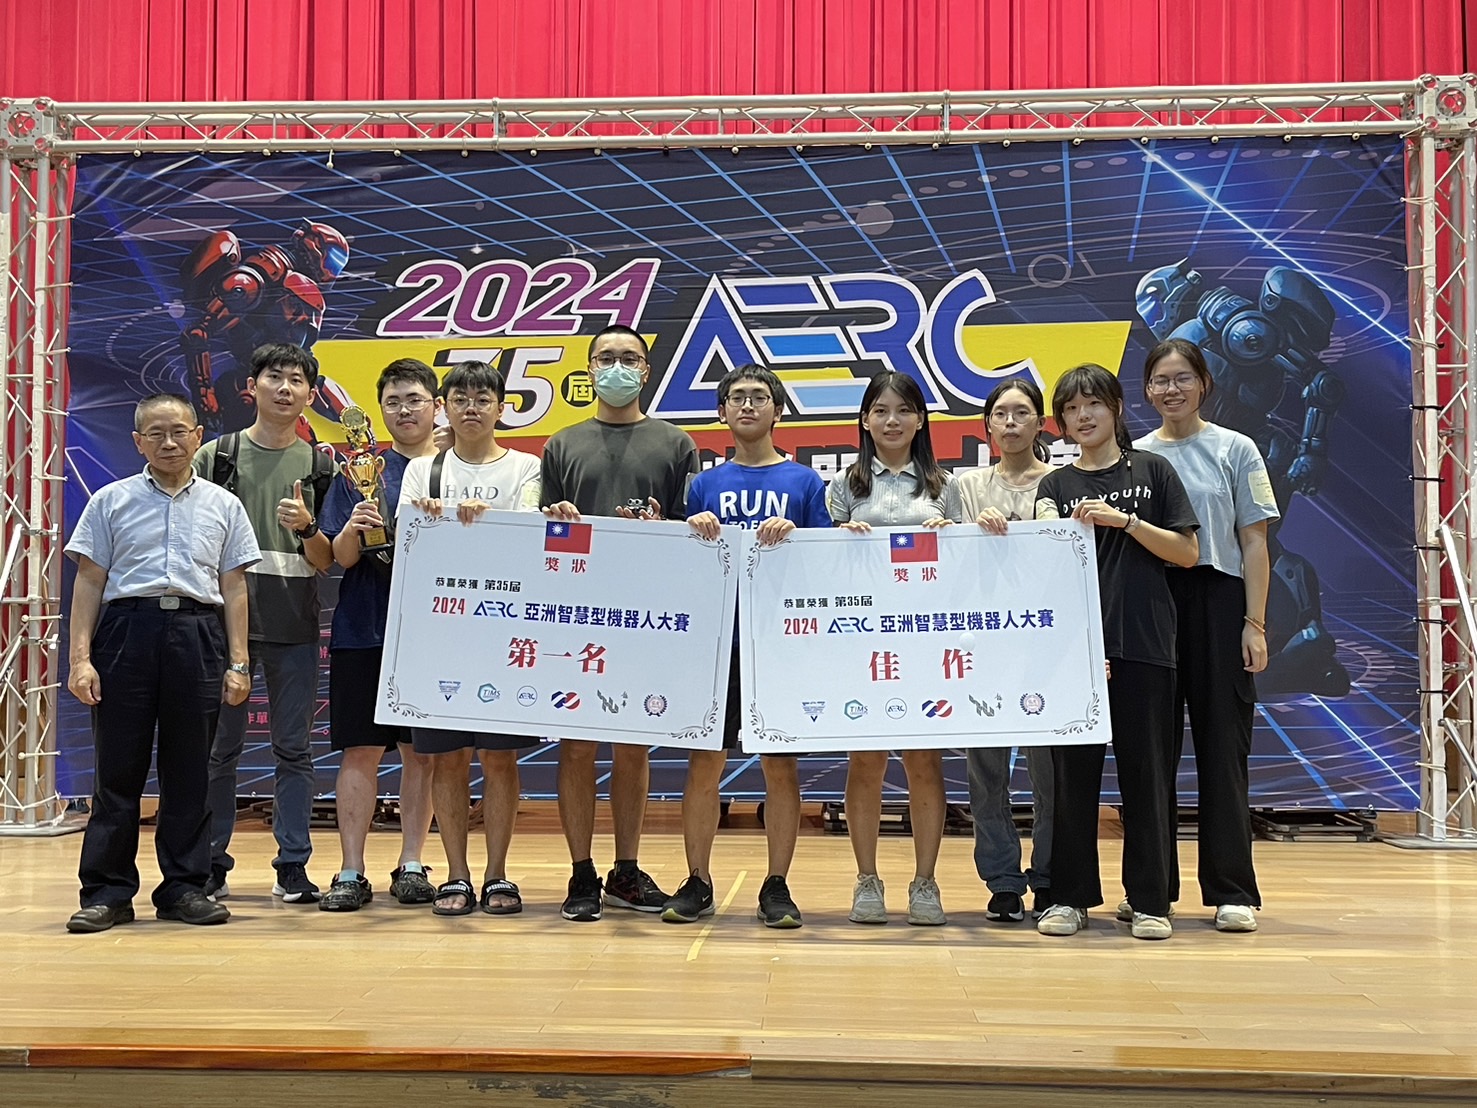 2024年 第35屆AERC亞洲智慧型機器人大賽